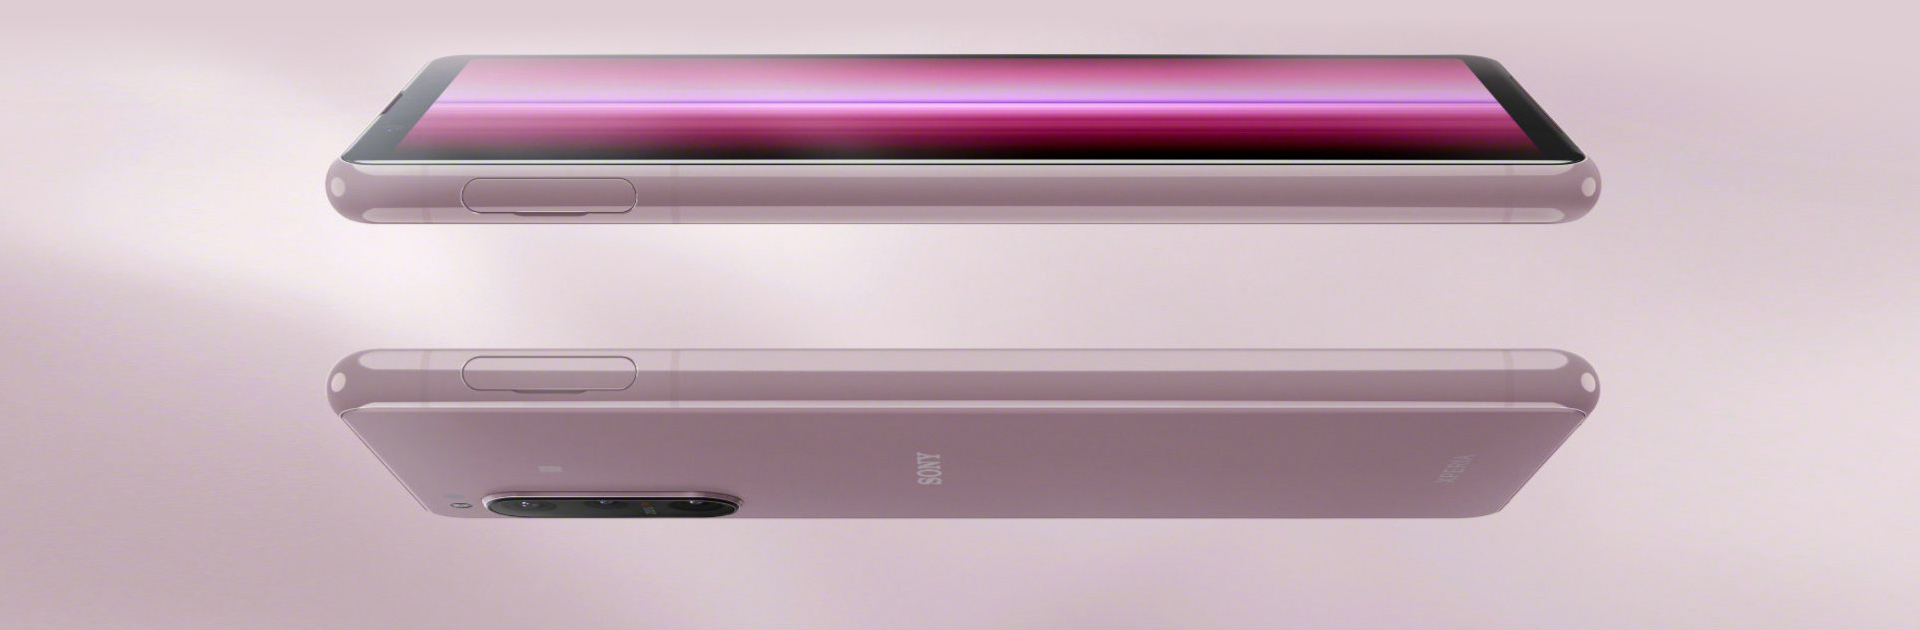 Xperia 5 II 粉色 口袋尺寸 轻巧便携